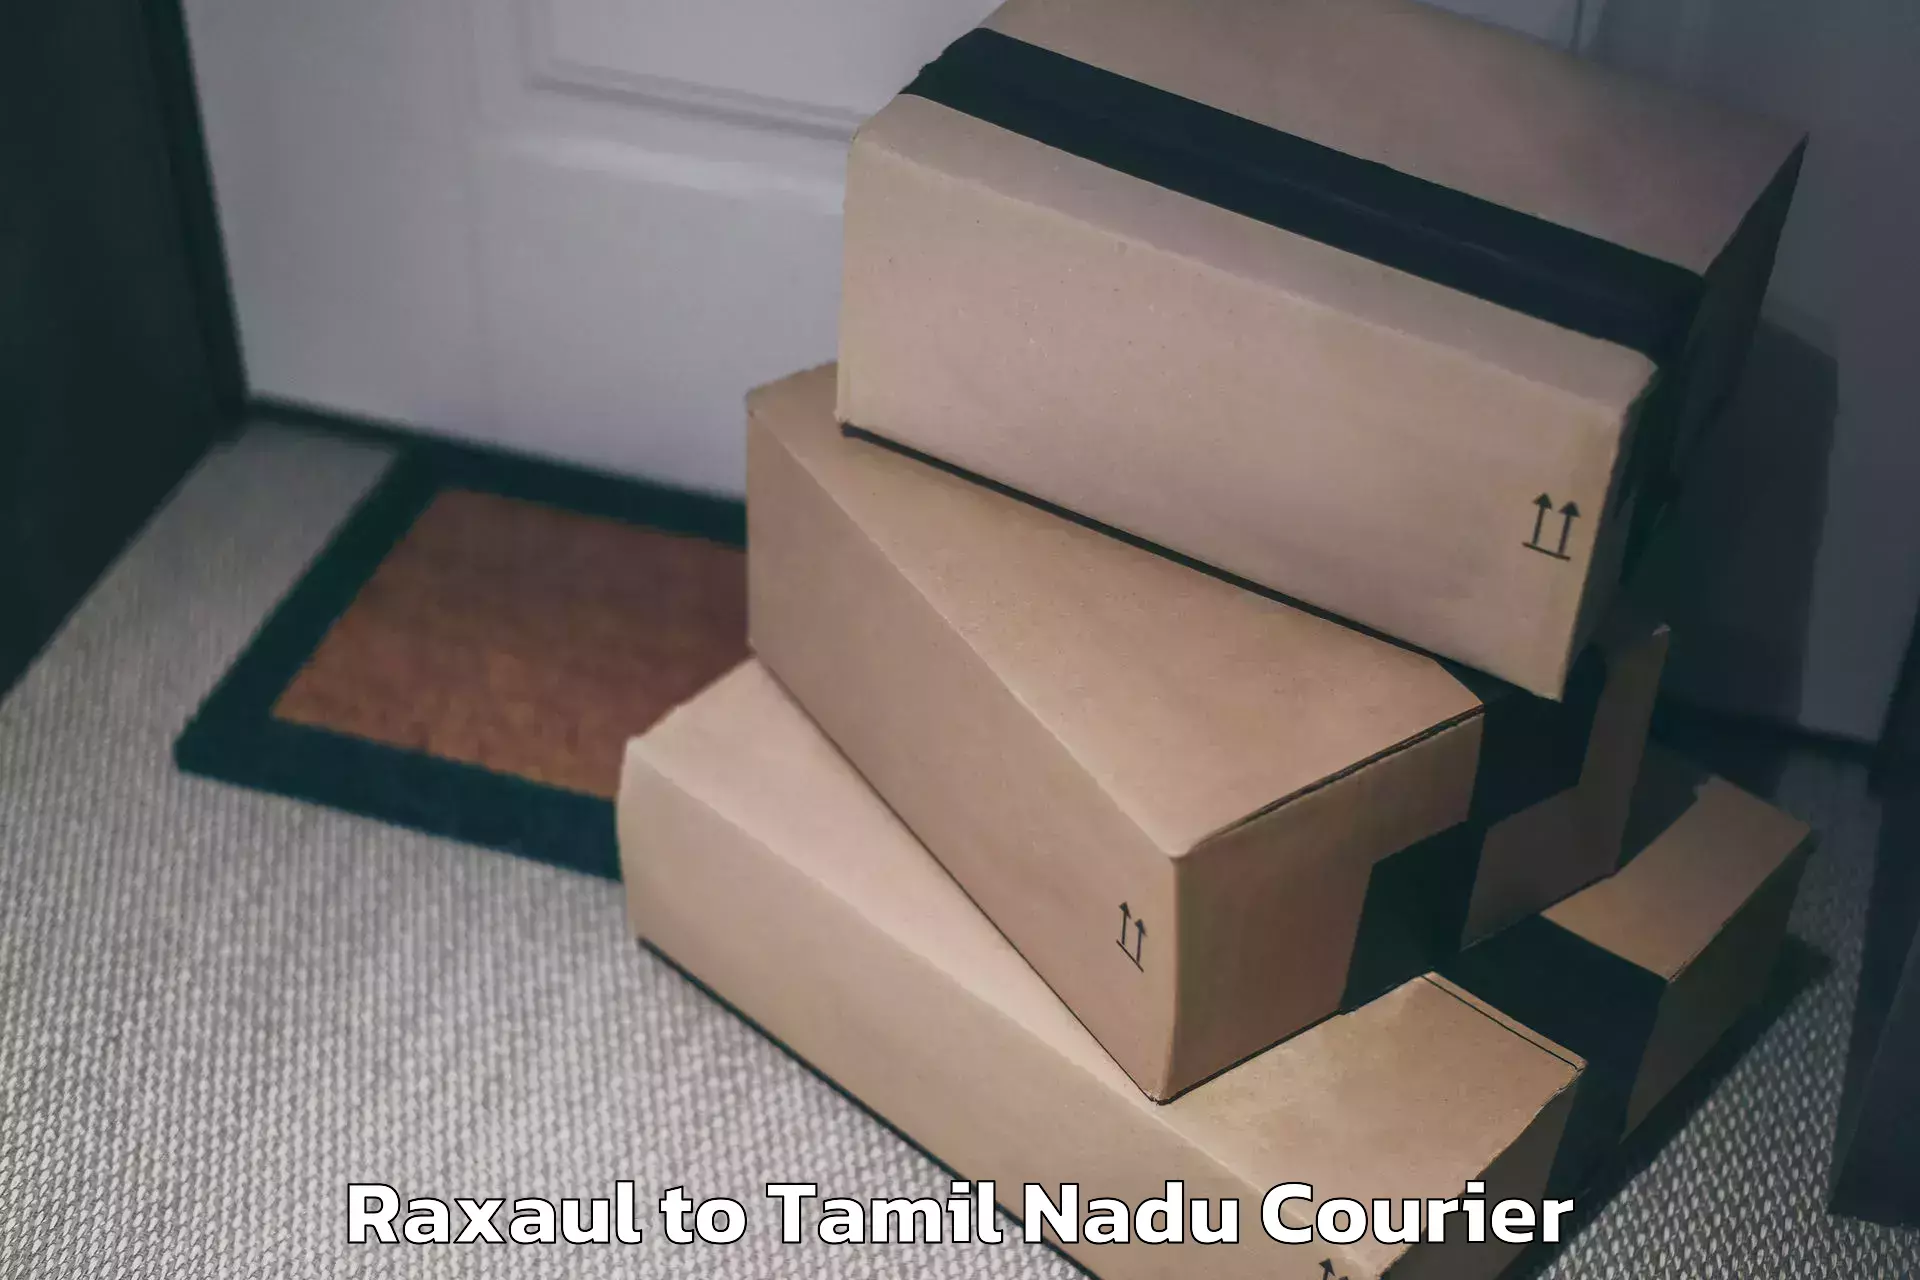 Door-to-door baggage service Raxaul to Tamil Nadu